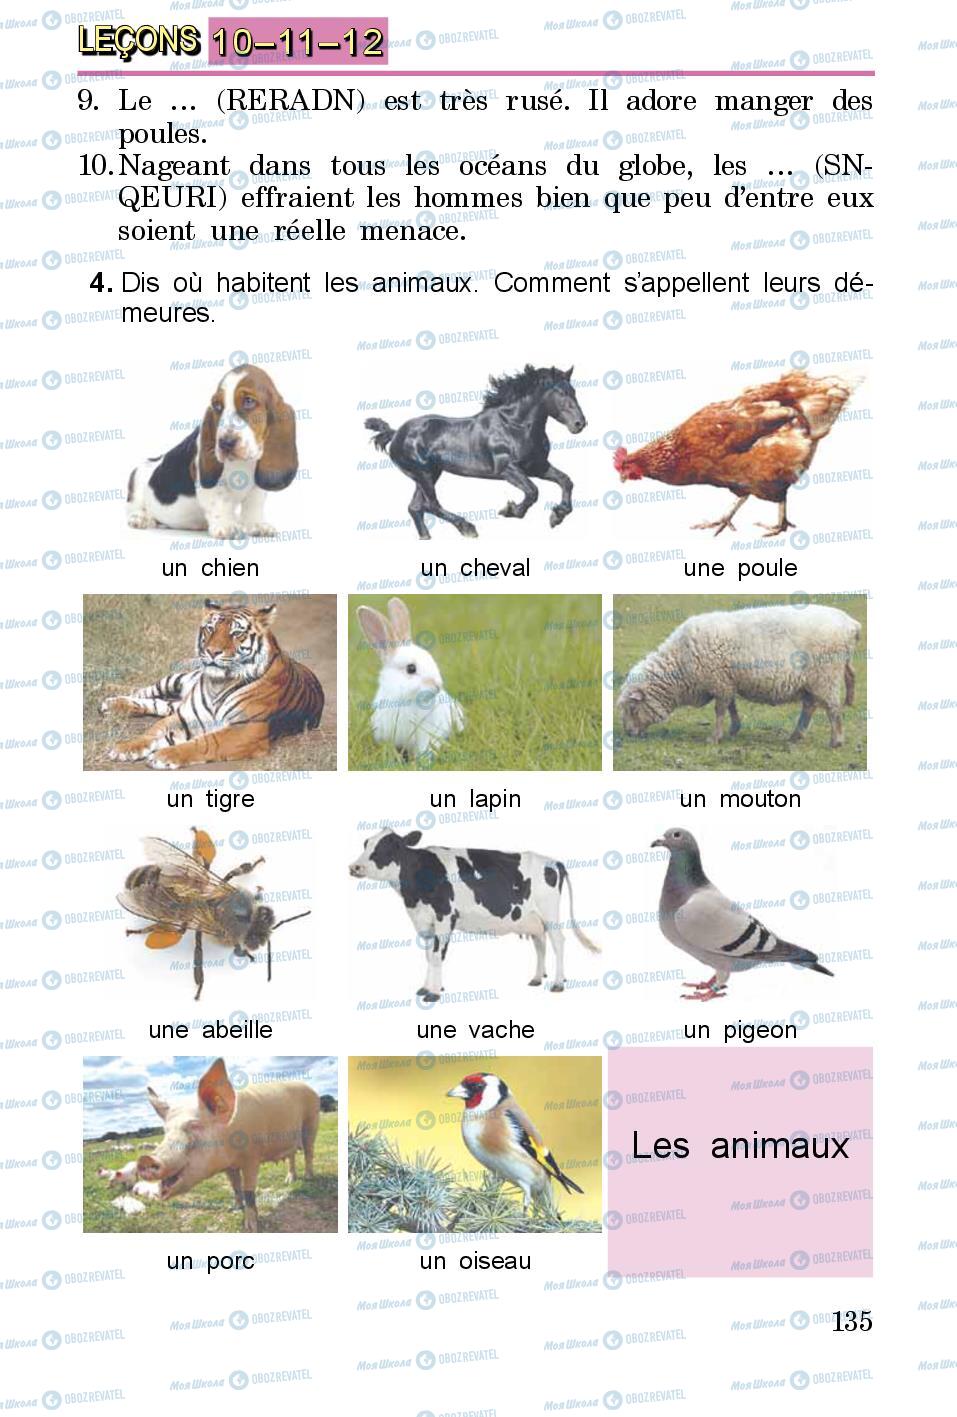 Підручники Французька мова 3 клас сторінка 135